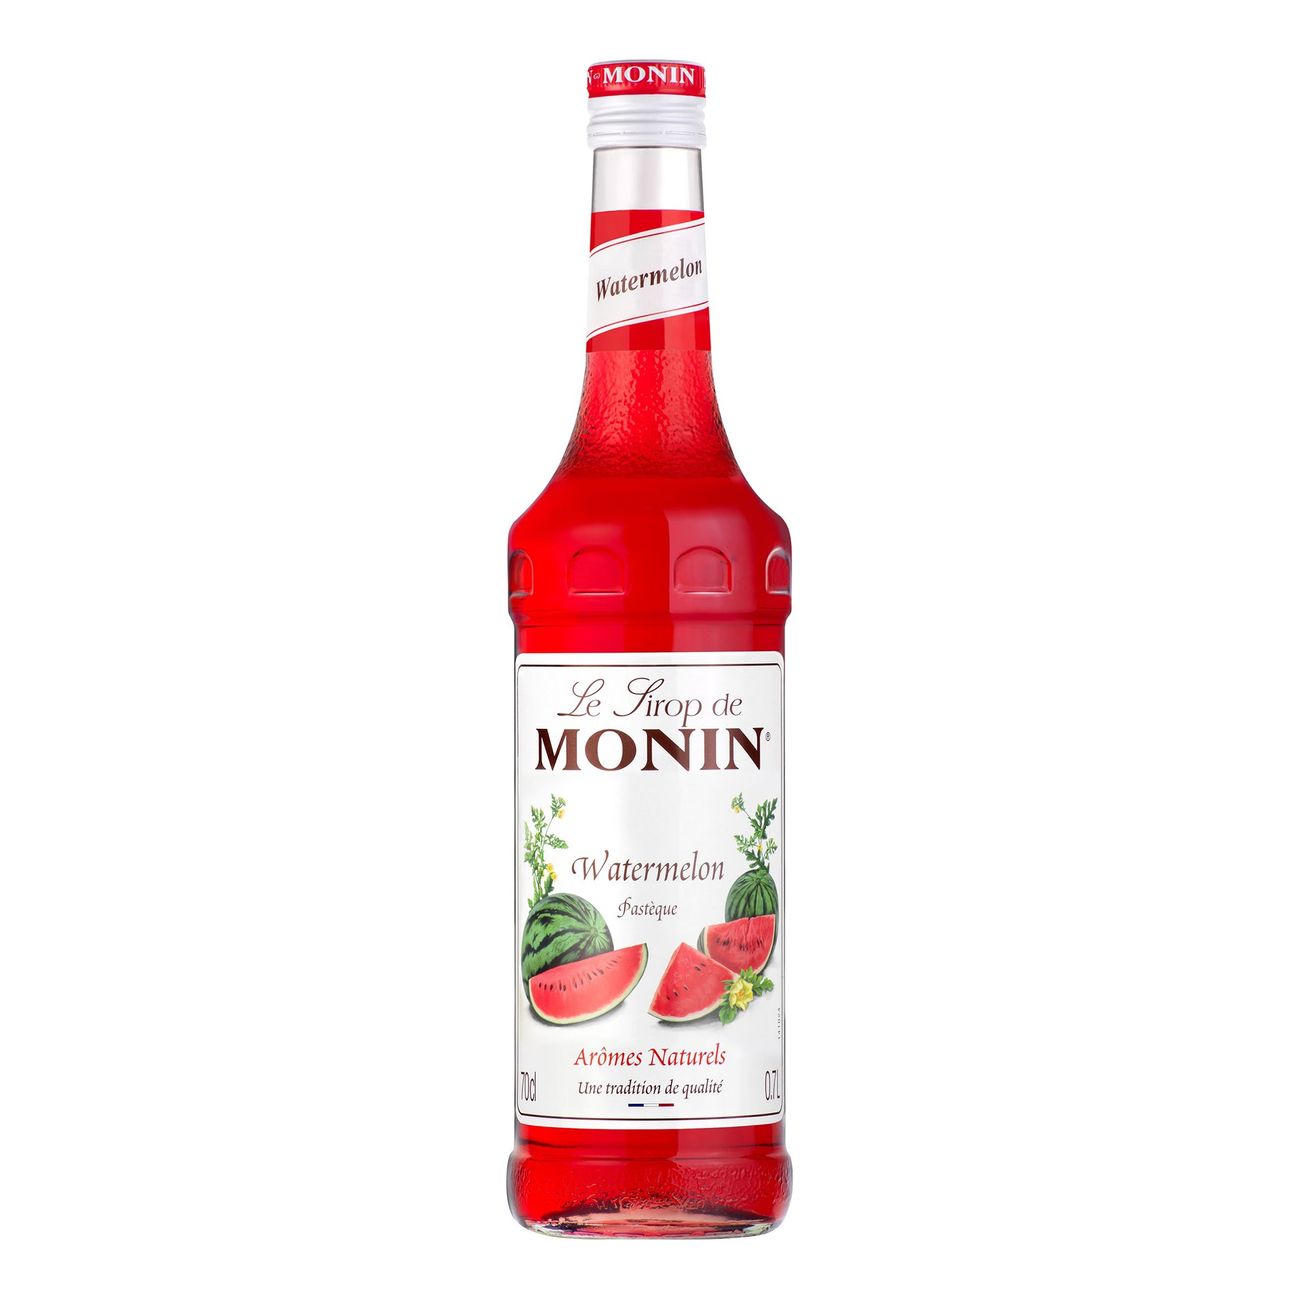 monin-vattenmelon-syrup-31887-3